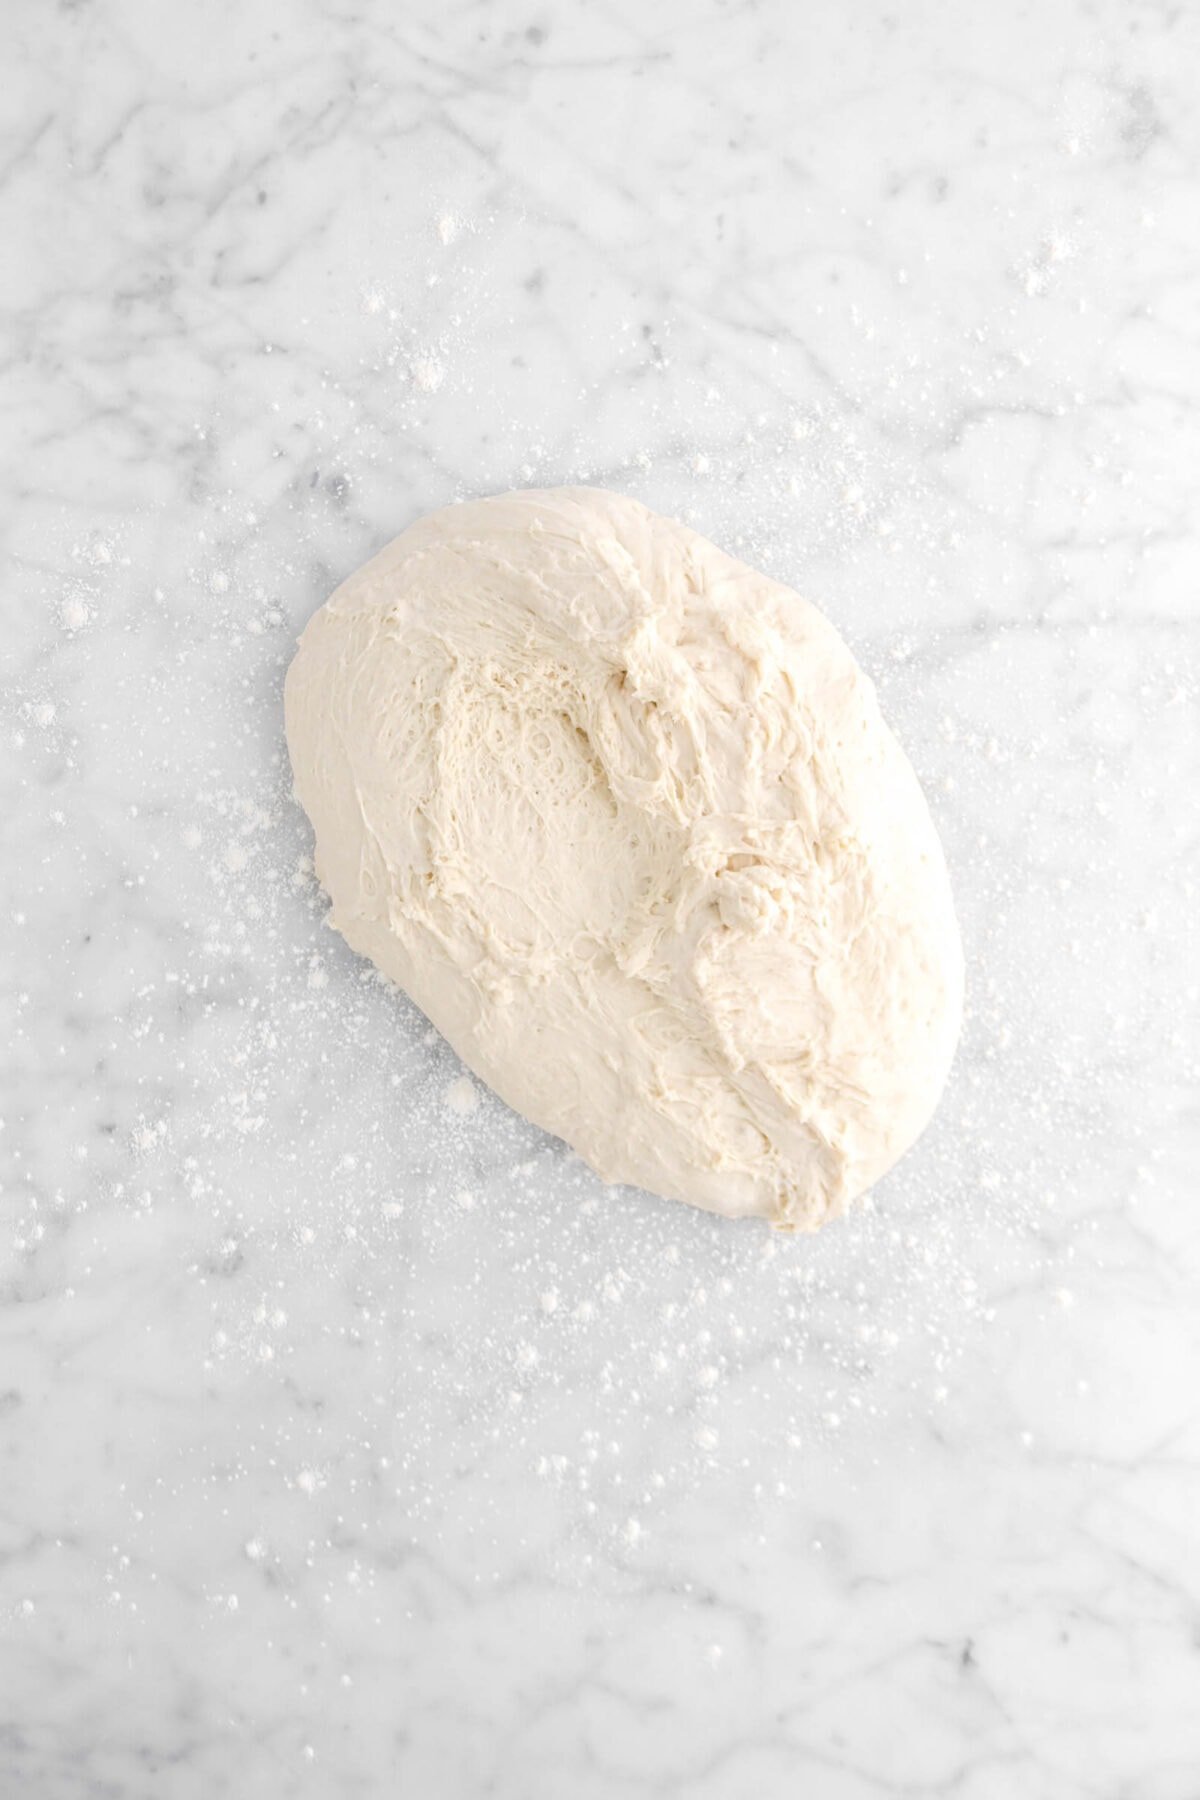 dough on floured marble surface